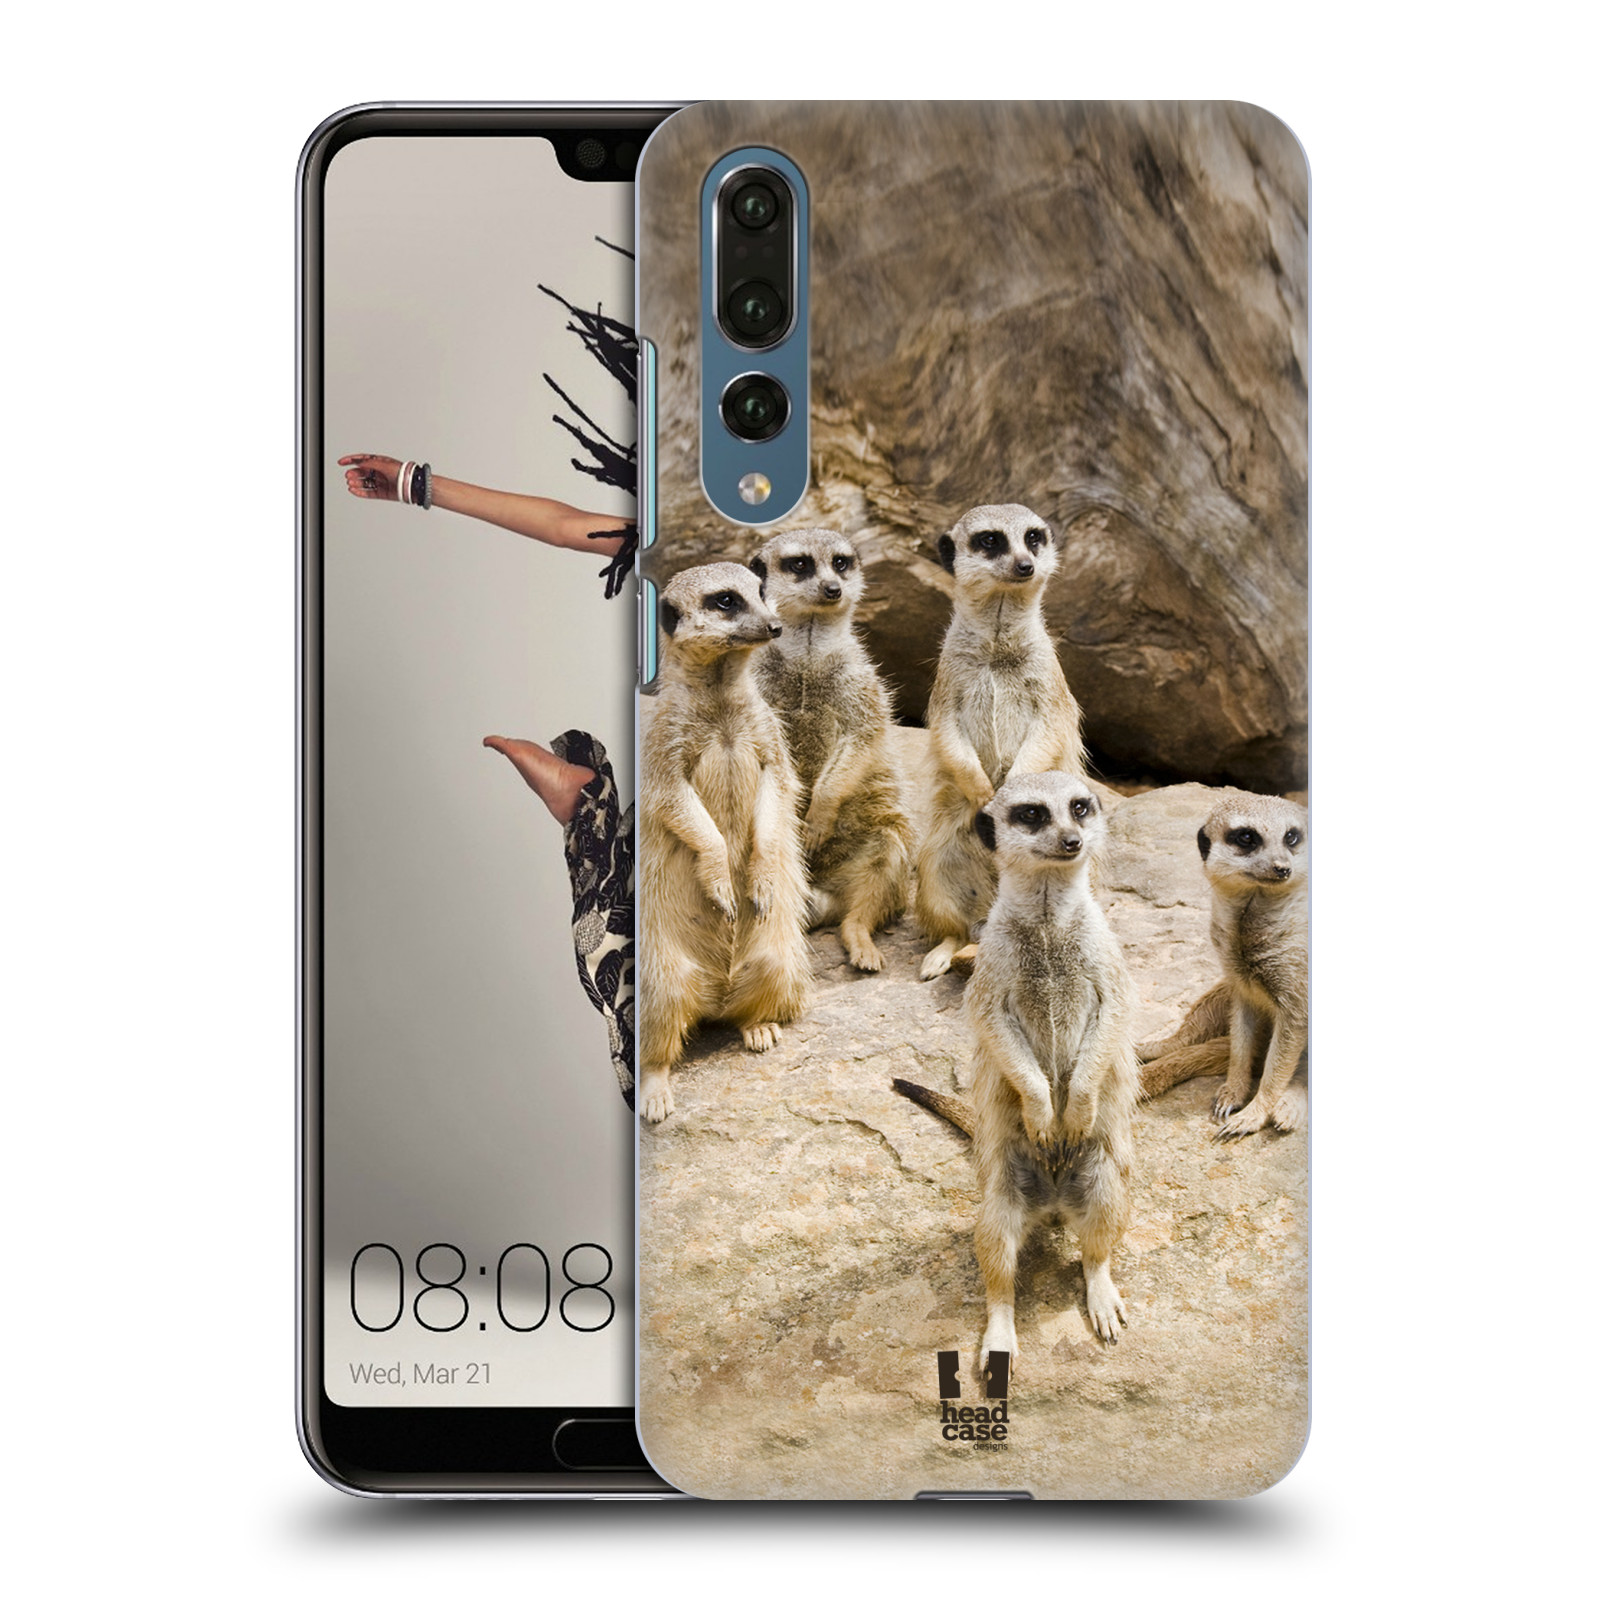 Zadní obal pro mobil Huawei P20 PRO - HEAD CASE - Svět zvířat roztomilé surikaty